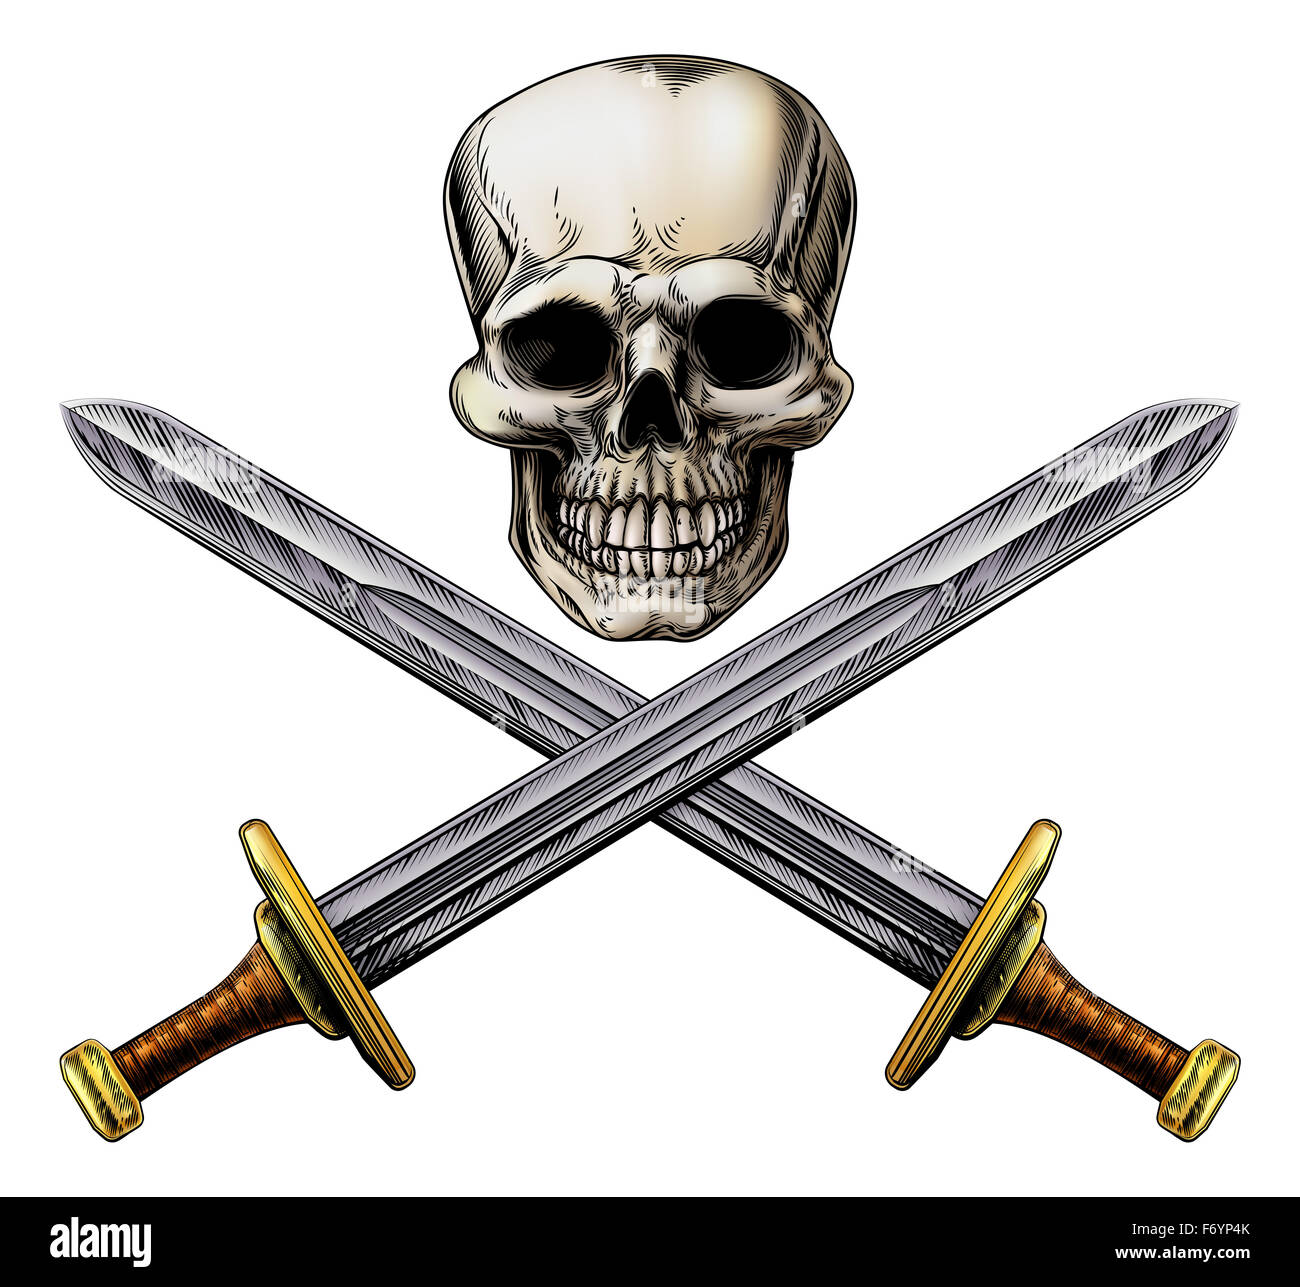 Un crâne humain et des épées croisées style pirate signe dans un style sur bois Banque D'Images